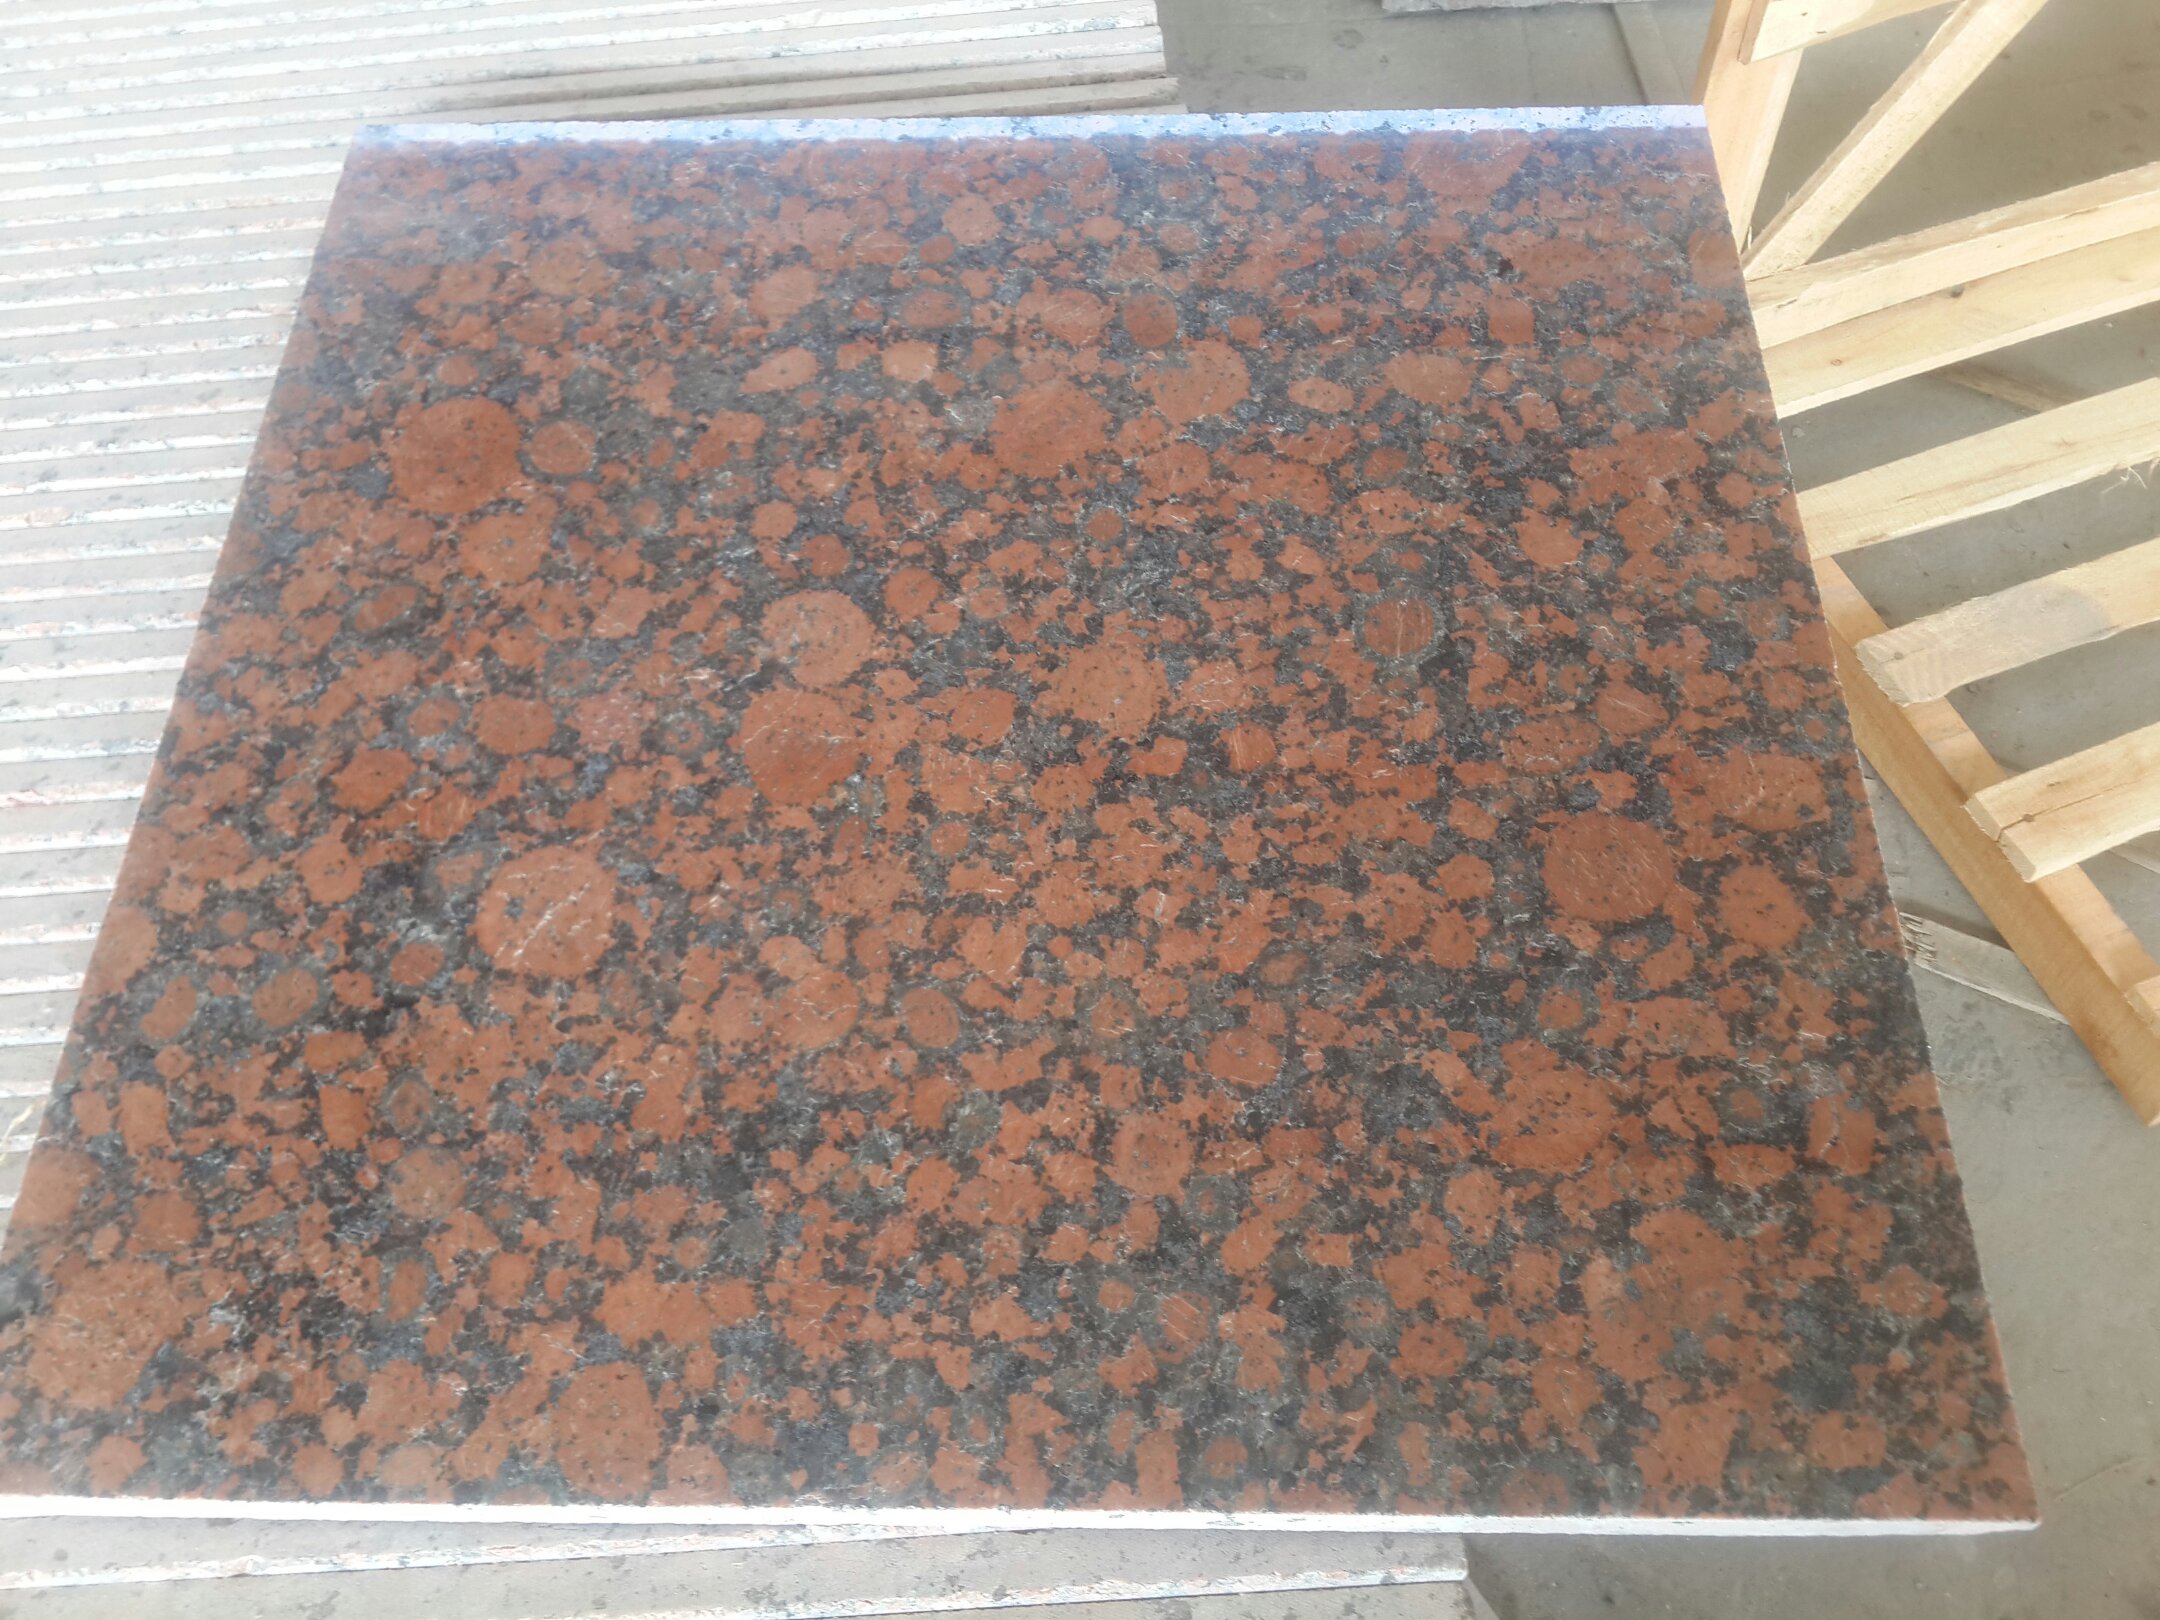 Baltic Red Granite Tiles Imported Granite Red Granite Good Price